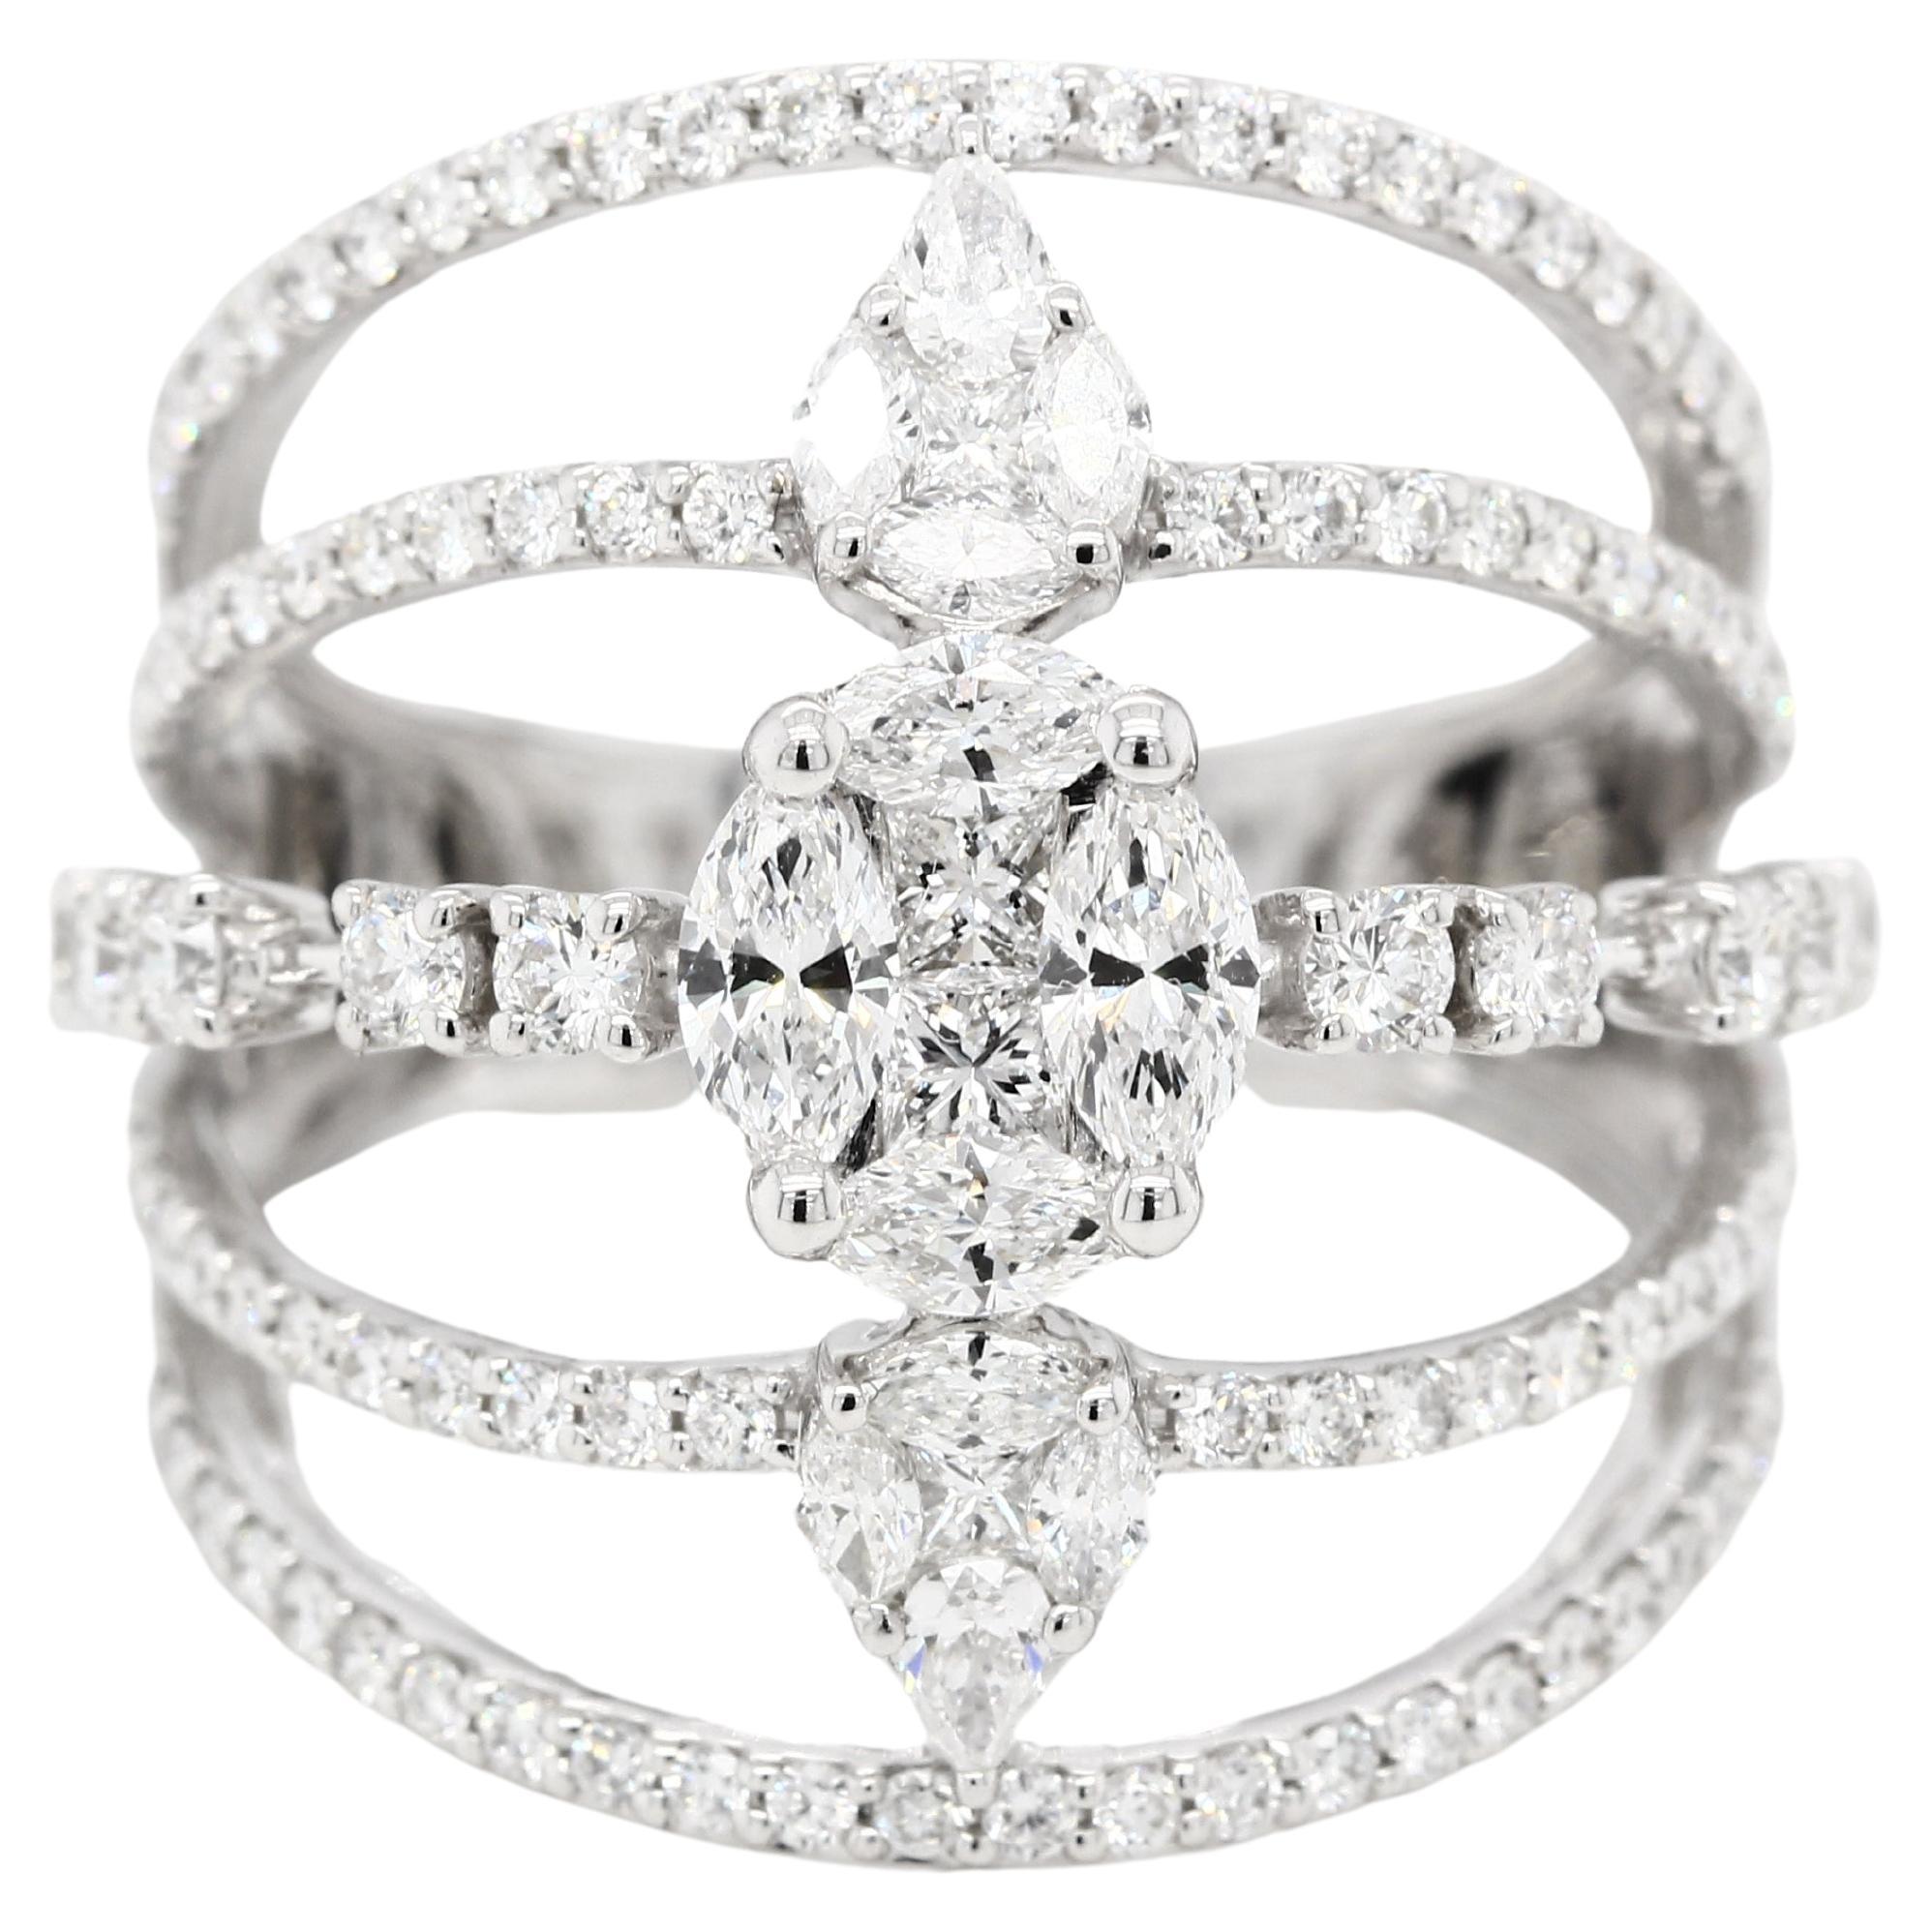 For Sale:  1.76 Carat Diamond Illusion Wedding Ring in 18 Karat Gold